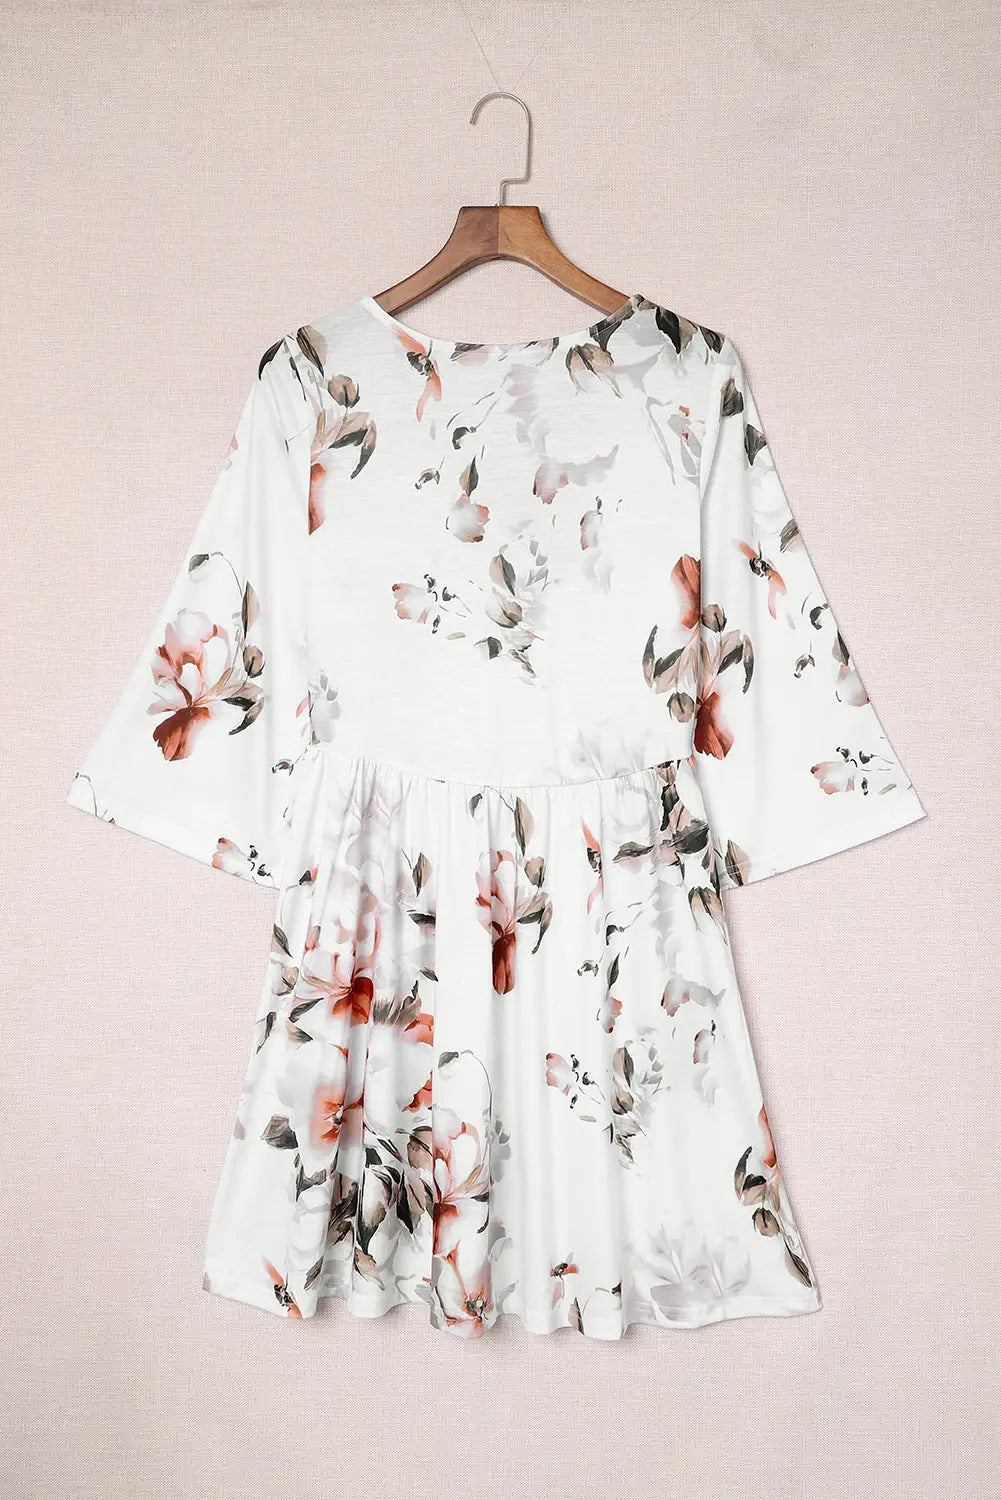 White v neck 3/4 sleeve floral dress - dresses